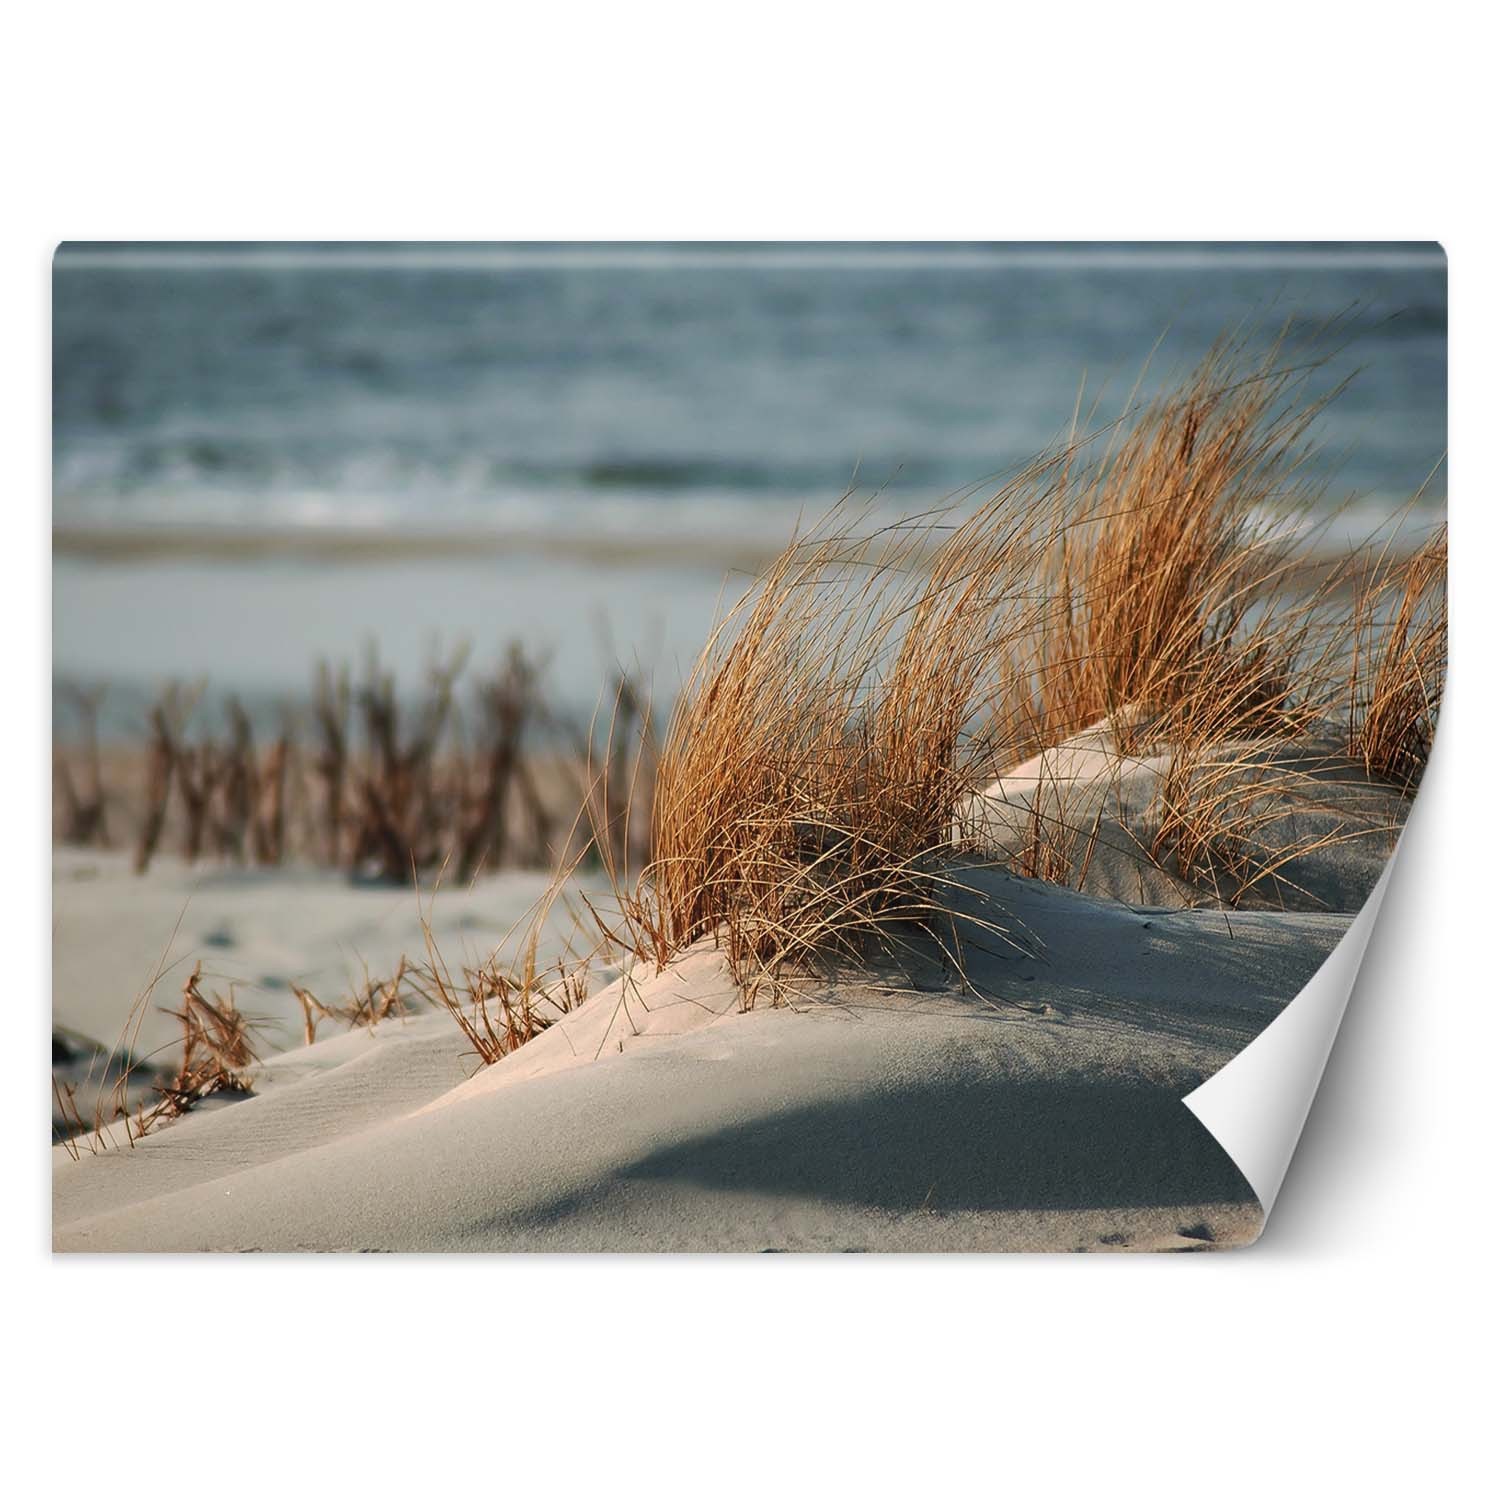 Trend24 – Behang – Duinen Aan De Oostzee – Behangpapier – Fotobehang Natuur – Behang Woonkamer – 450x315x2 cm – Incl. behanglijm